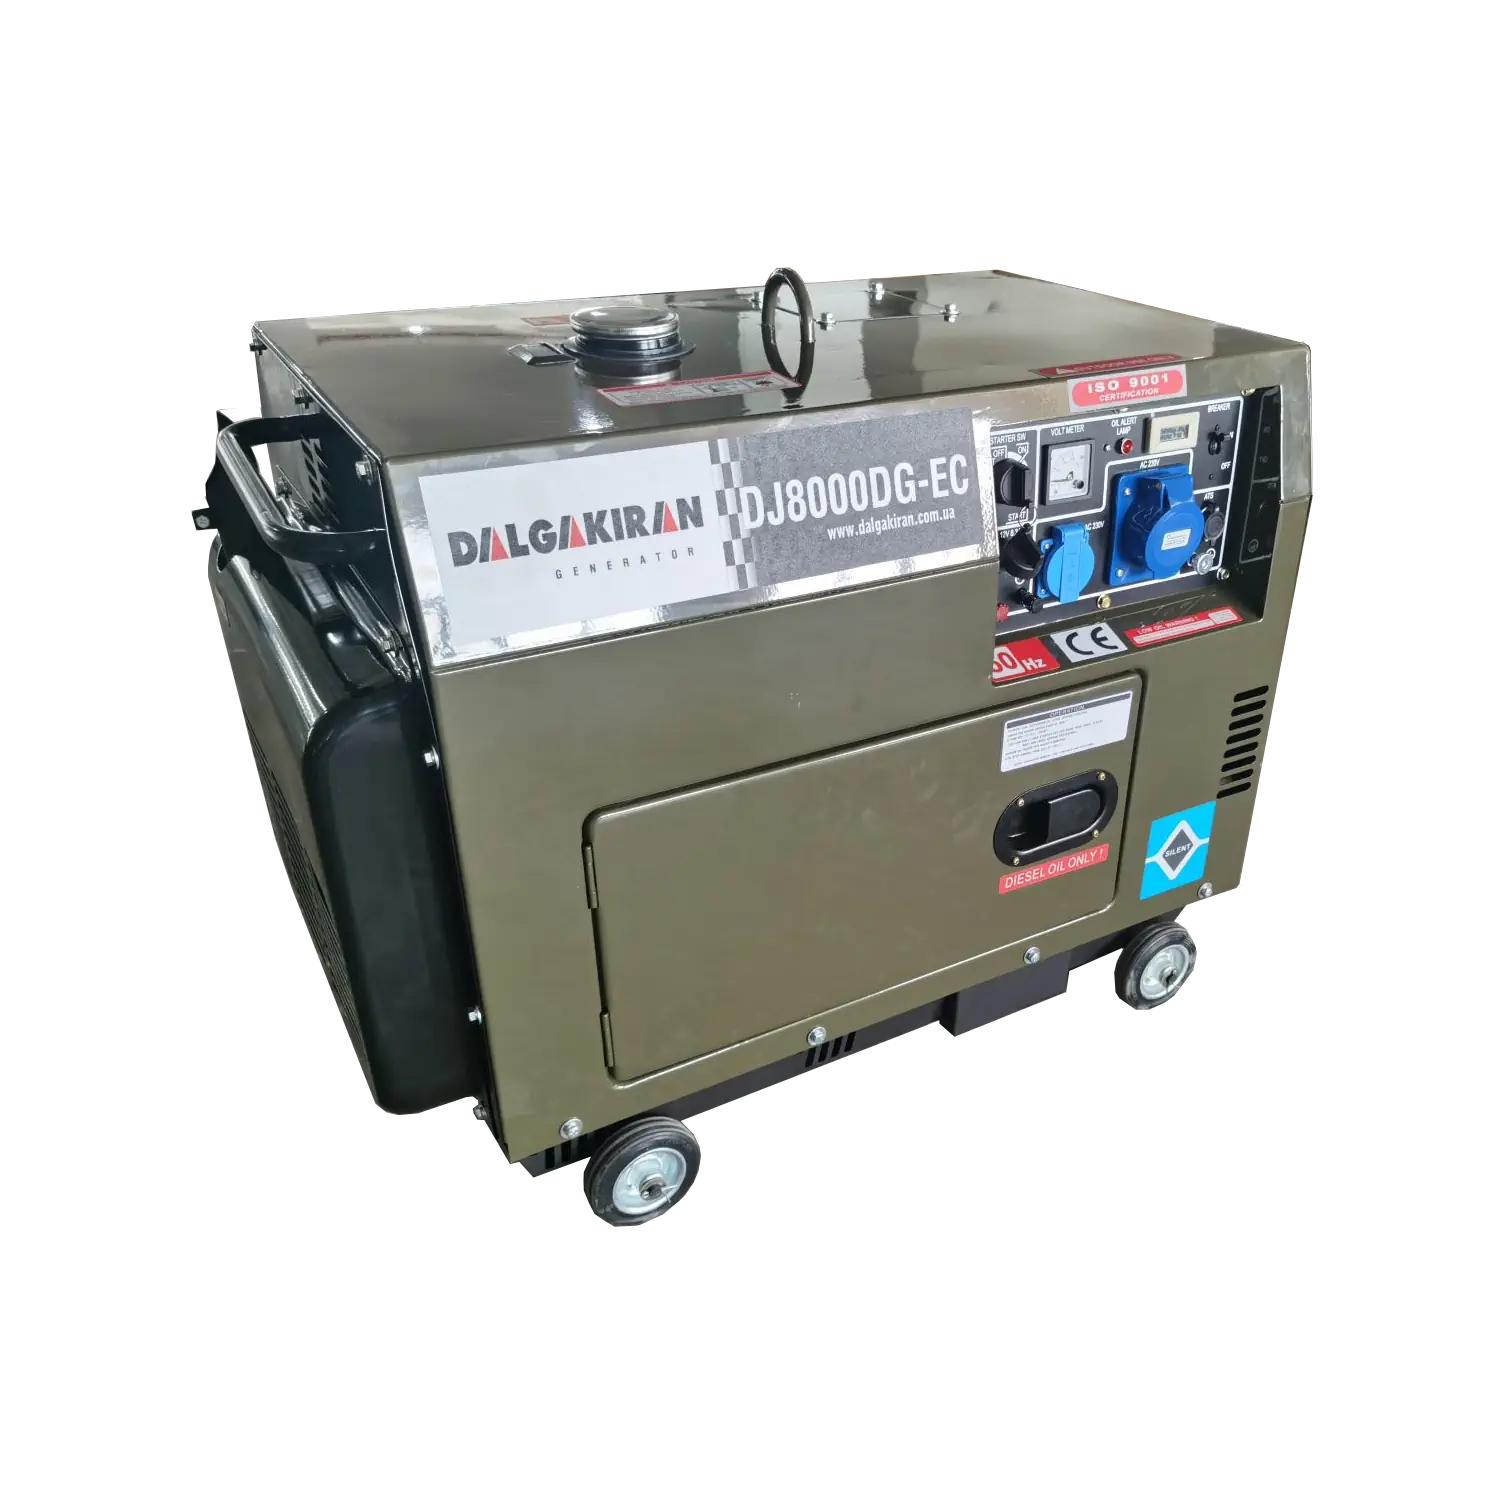 DALGAKIRAN DJ 8000 DG series diesel generators